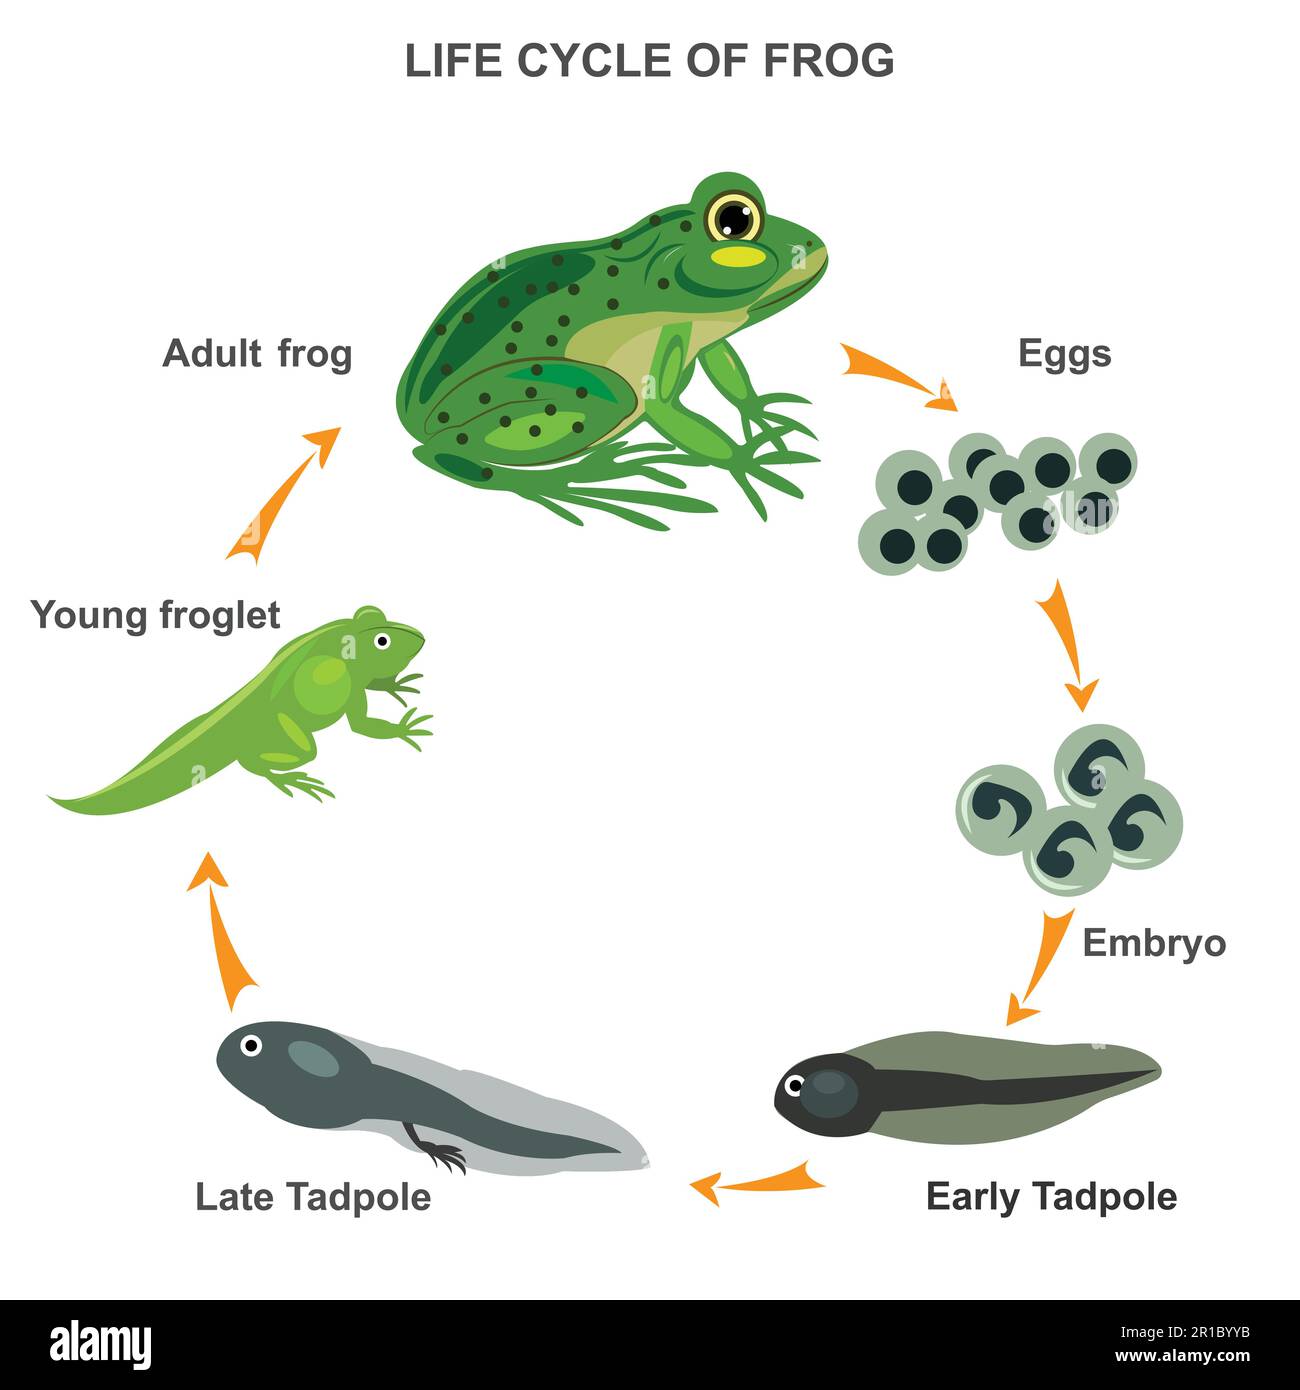 Lebenszyklusdarstellung eines Froschvektors. Transformationsprozess mit allen Phasen. Beispiele für Eier, Embryonen, Kaulquappen und adulte Phasen. Metamorphosen-Explan Stock Vektor